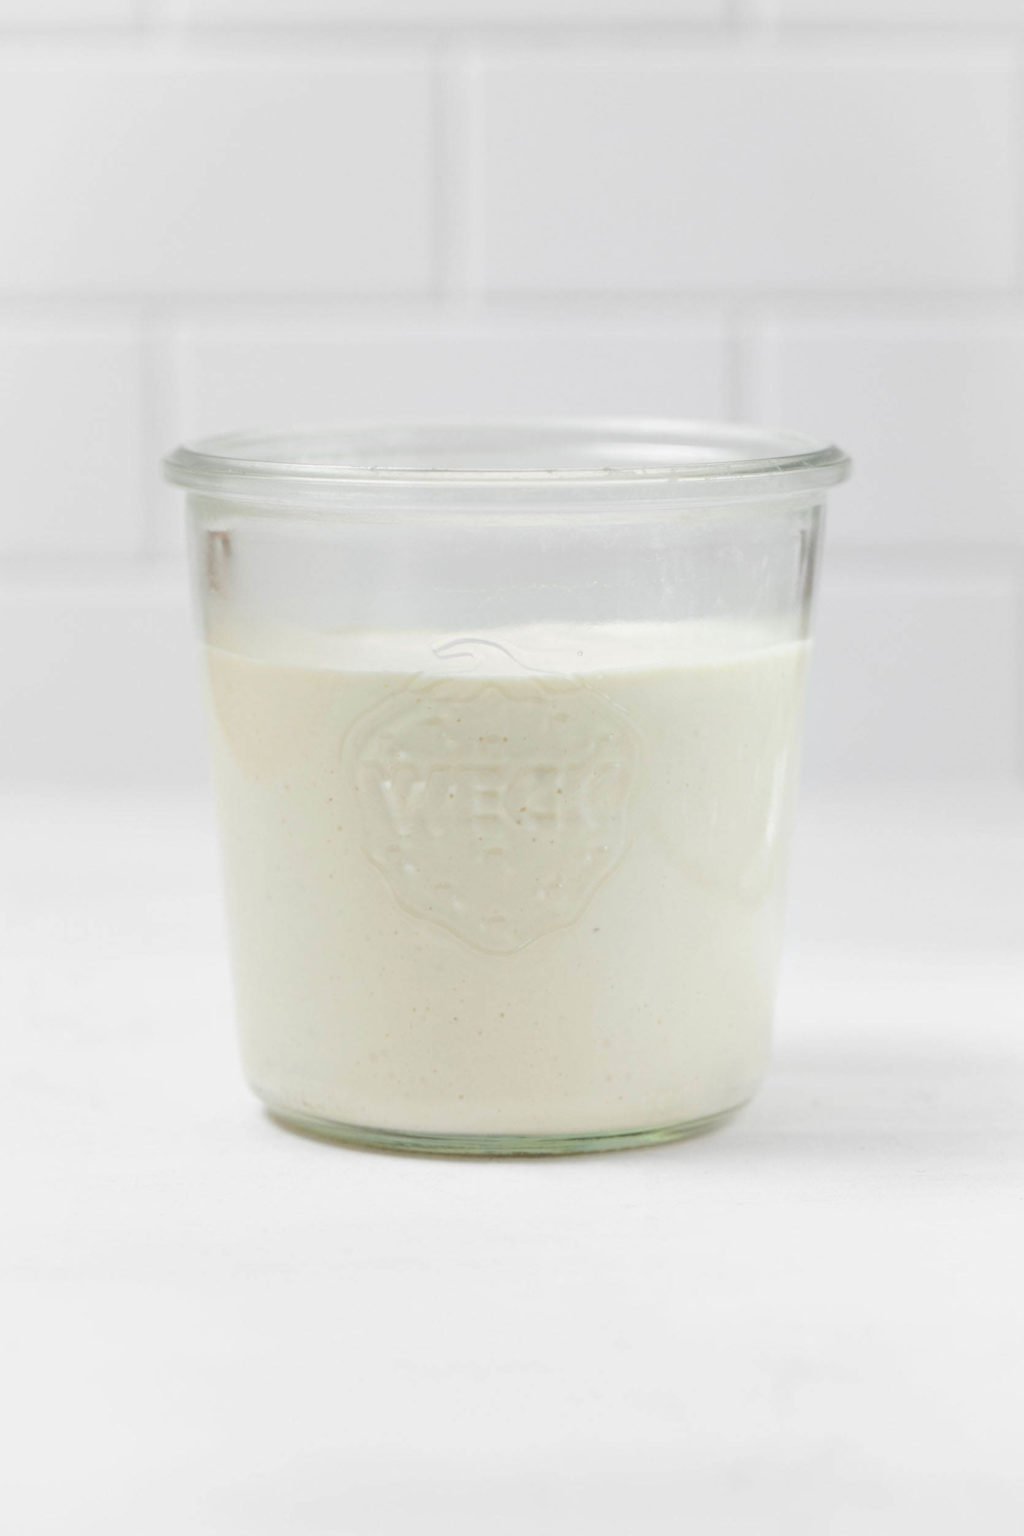 El tarro de vidrio contiene crema agria vegana de color blanco cremoso.  Se apoya sobre una superficie blanca.